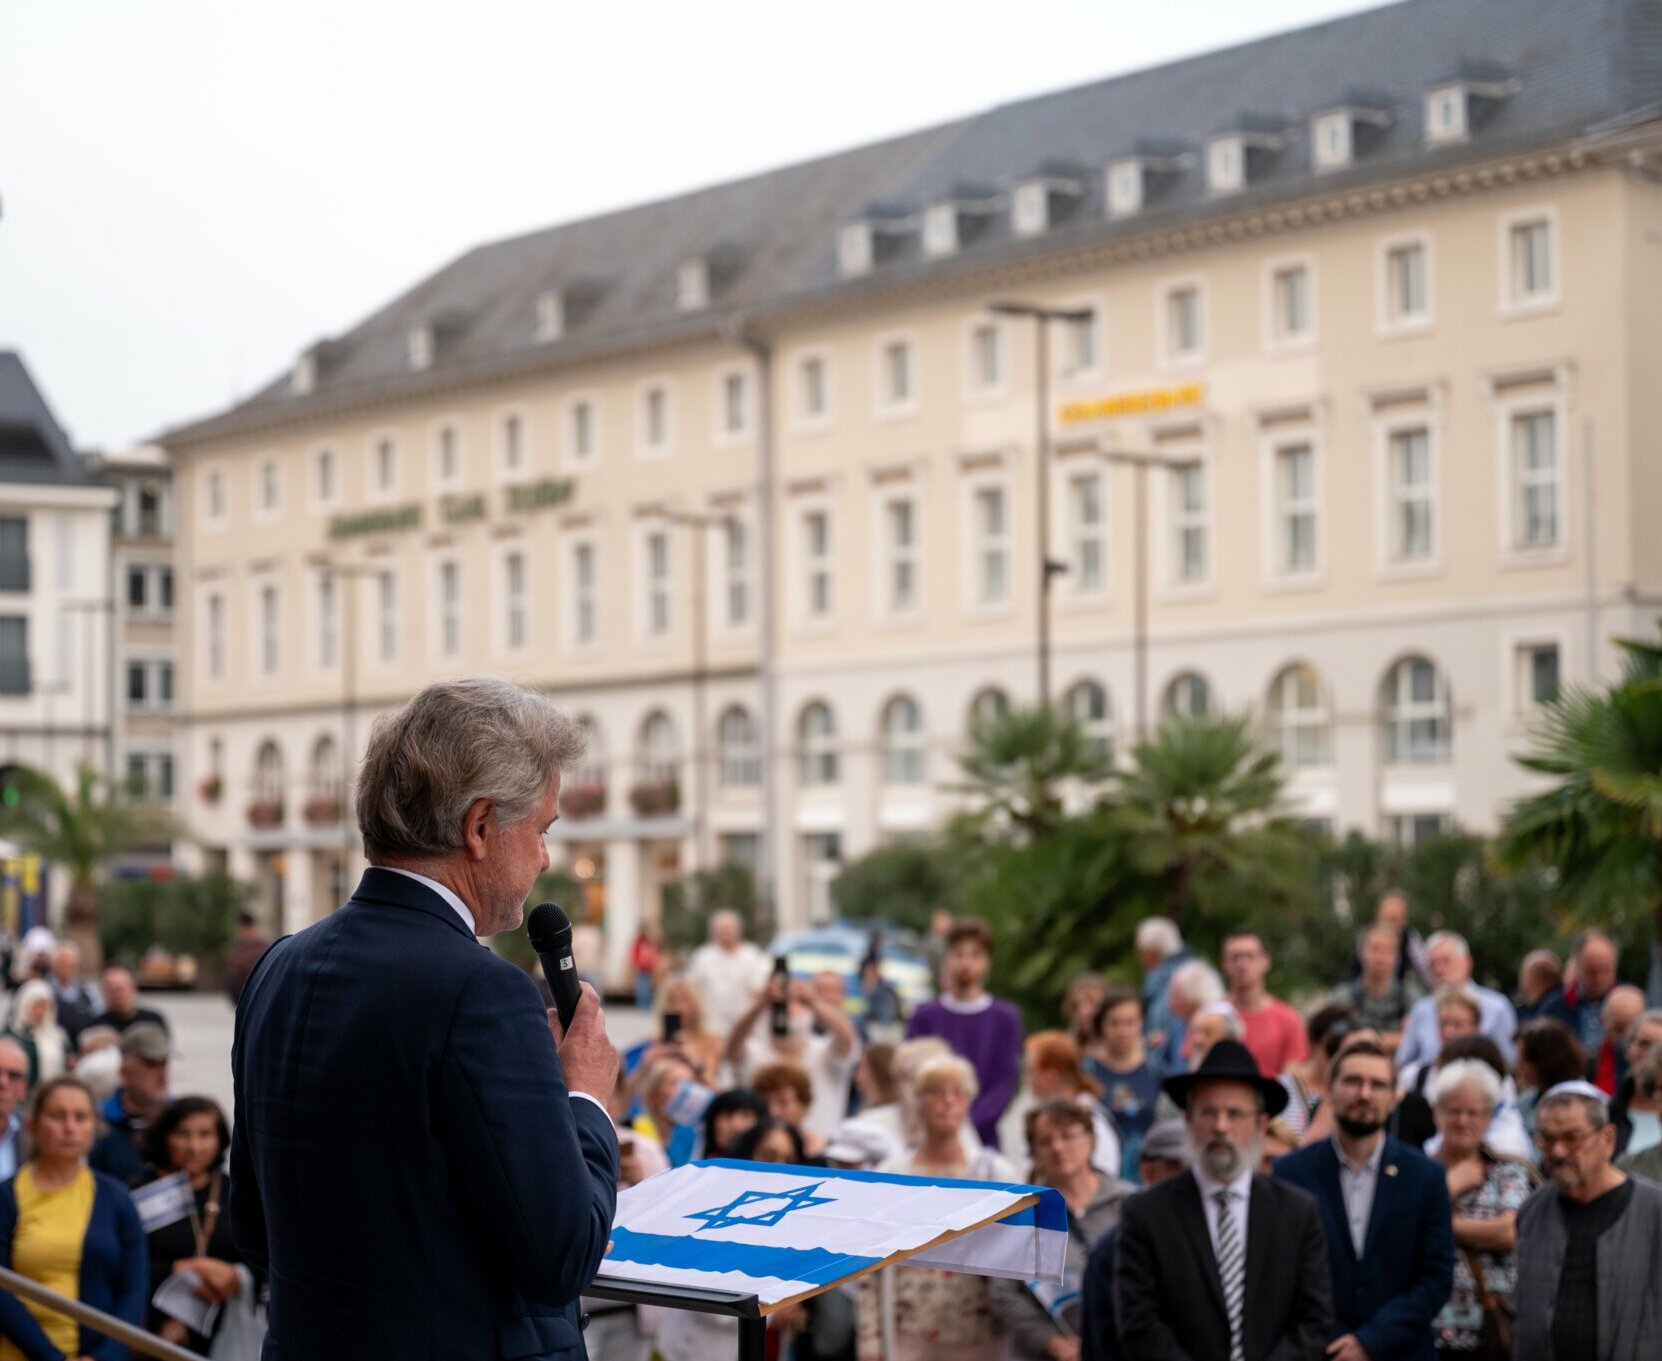 Oberbürgermeister Dr. Frank Mentrup spricht auf der Mahnwache anlässlich der Terror-Angriffe gegen Israel vor dem Rathaus. 